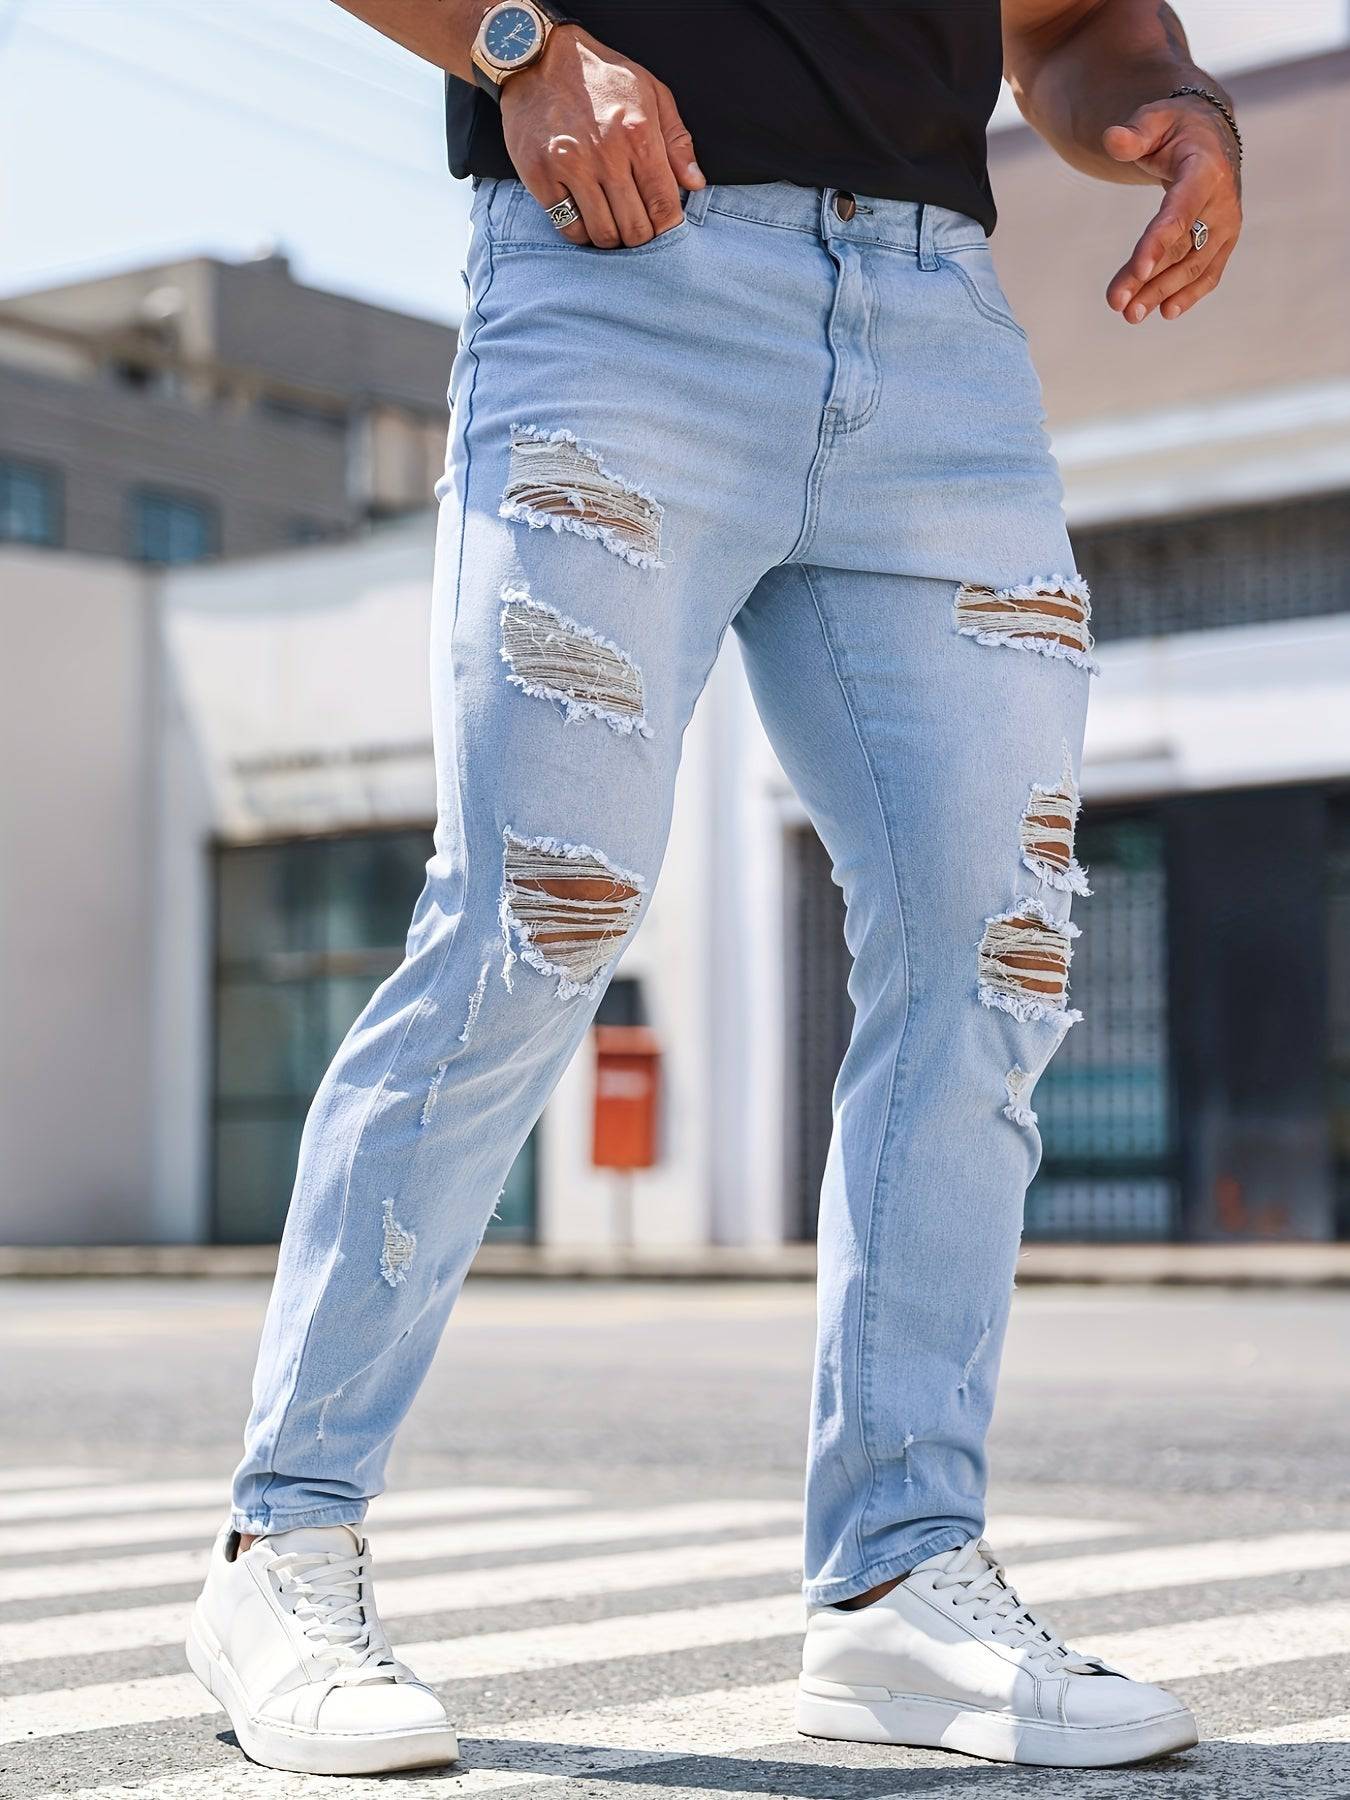 Distressed-Look Jeanshose für Herren - stylisch und bequem!